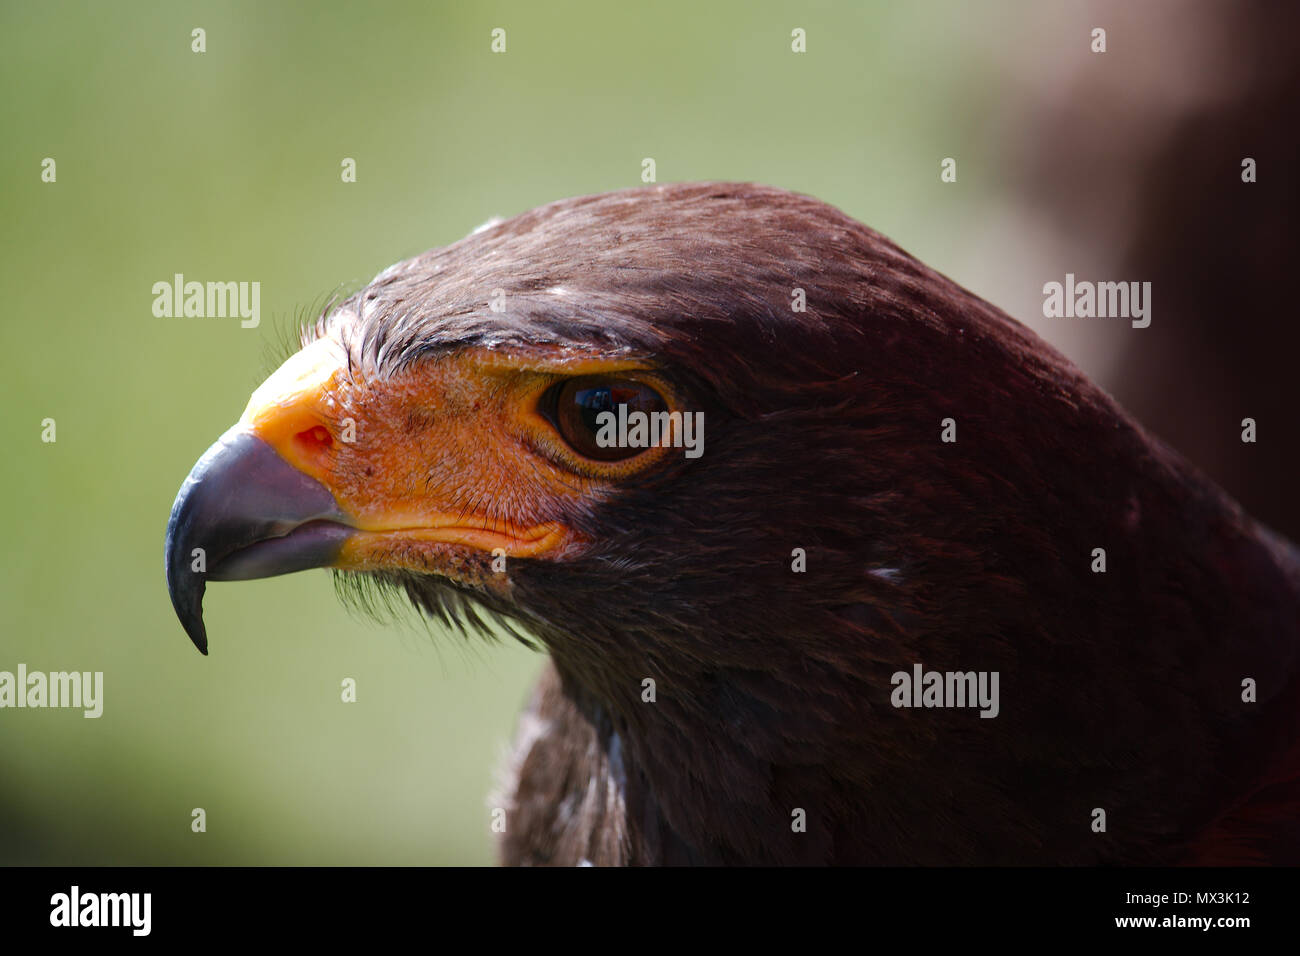 Un lato verticale di un falco di Harris guardando a sinistra che mostra il profilo della testa di uccelli e agganciato becco. Foto Stock